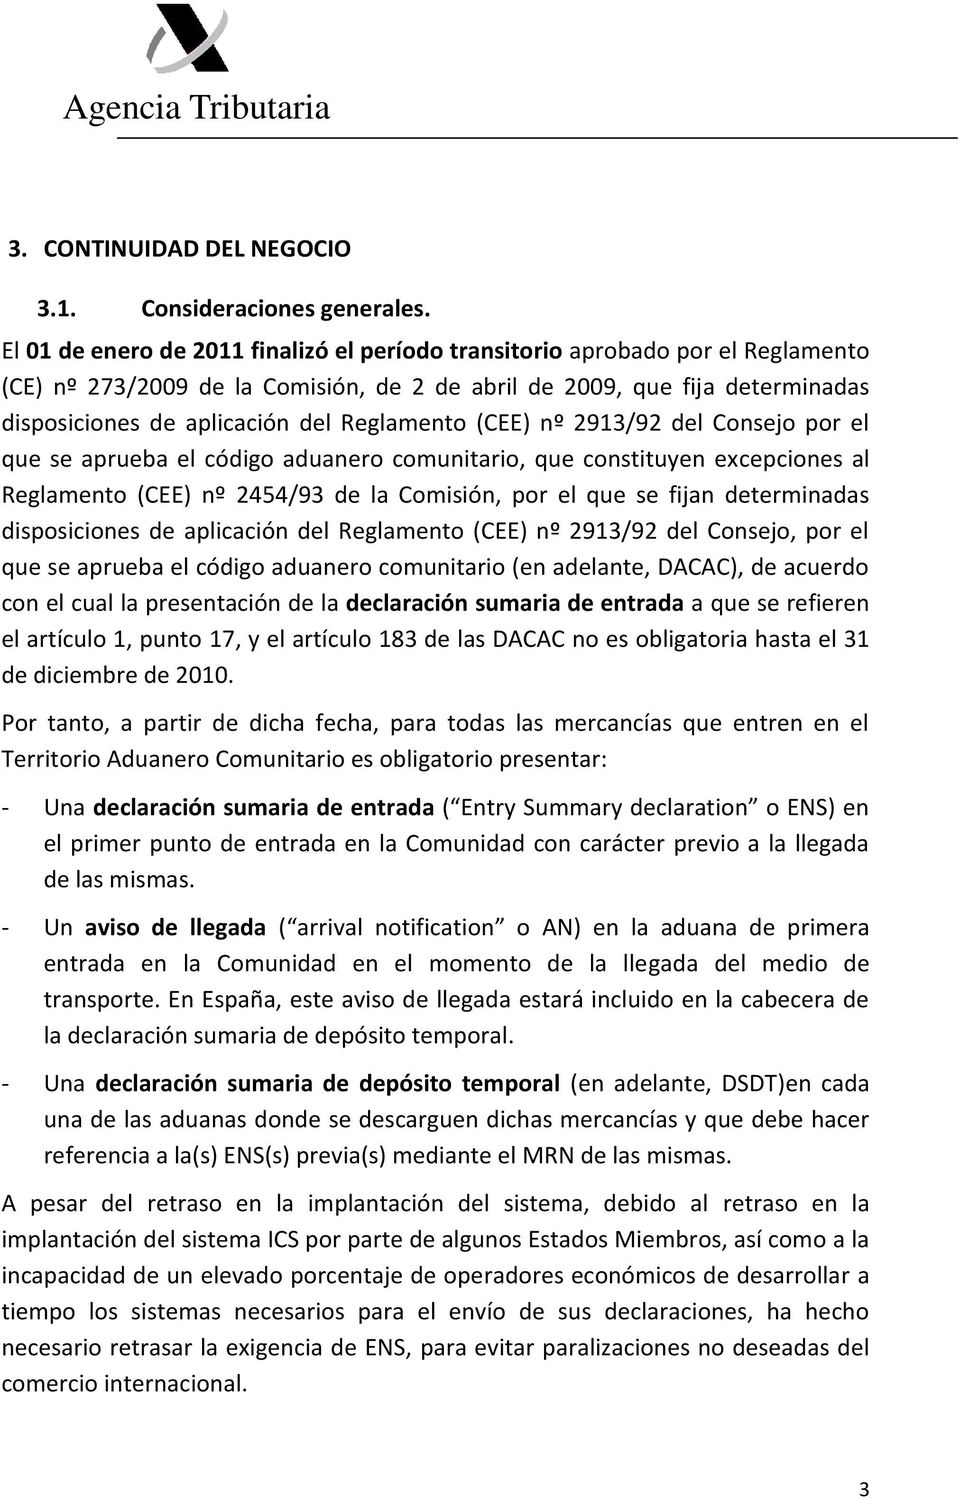 Reglamento (CEE) nº 2913/92 del Consejo por el que se aprueba el código aduanero comunitario, que constituyen excepciones al Reglamento (CEE) nº 2454/93 de la Comisión, por el que se fijan